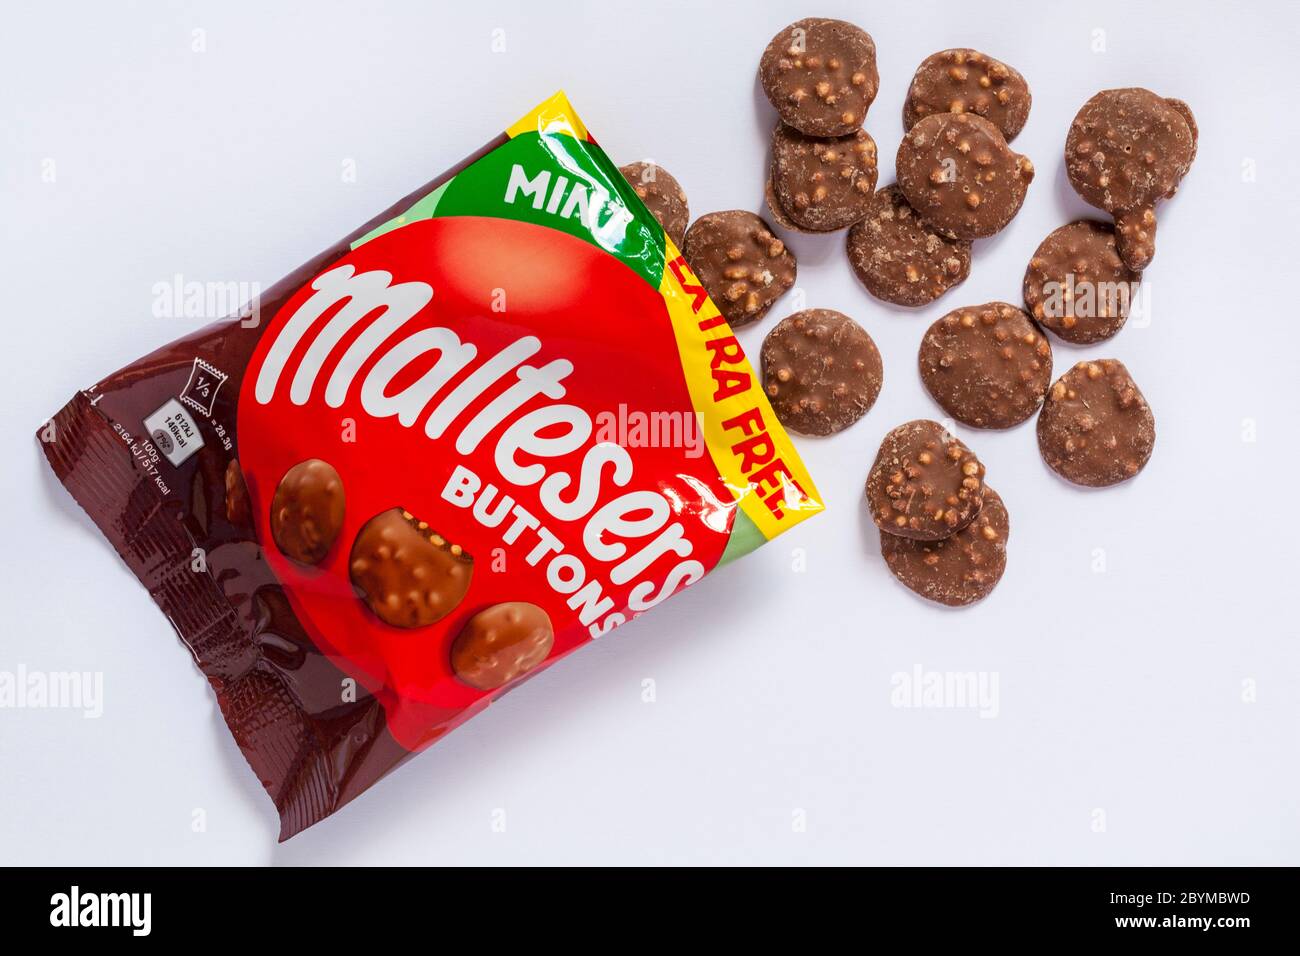 Pacchetto di nuovi bottoni Mint Maltesers aperto con contenuto versato isolato su sfondo bianco - cioccolato al latte aromatizzato con menta con pezzi in nido d'ape Foto Stock